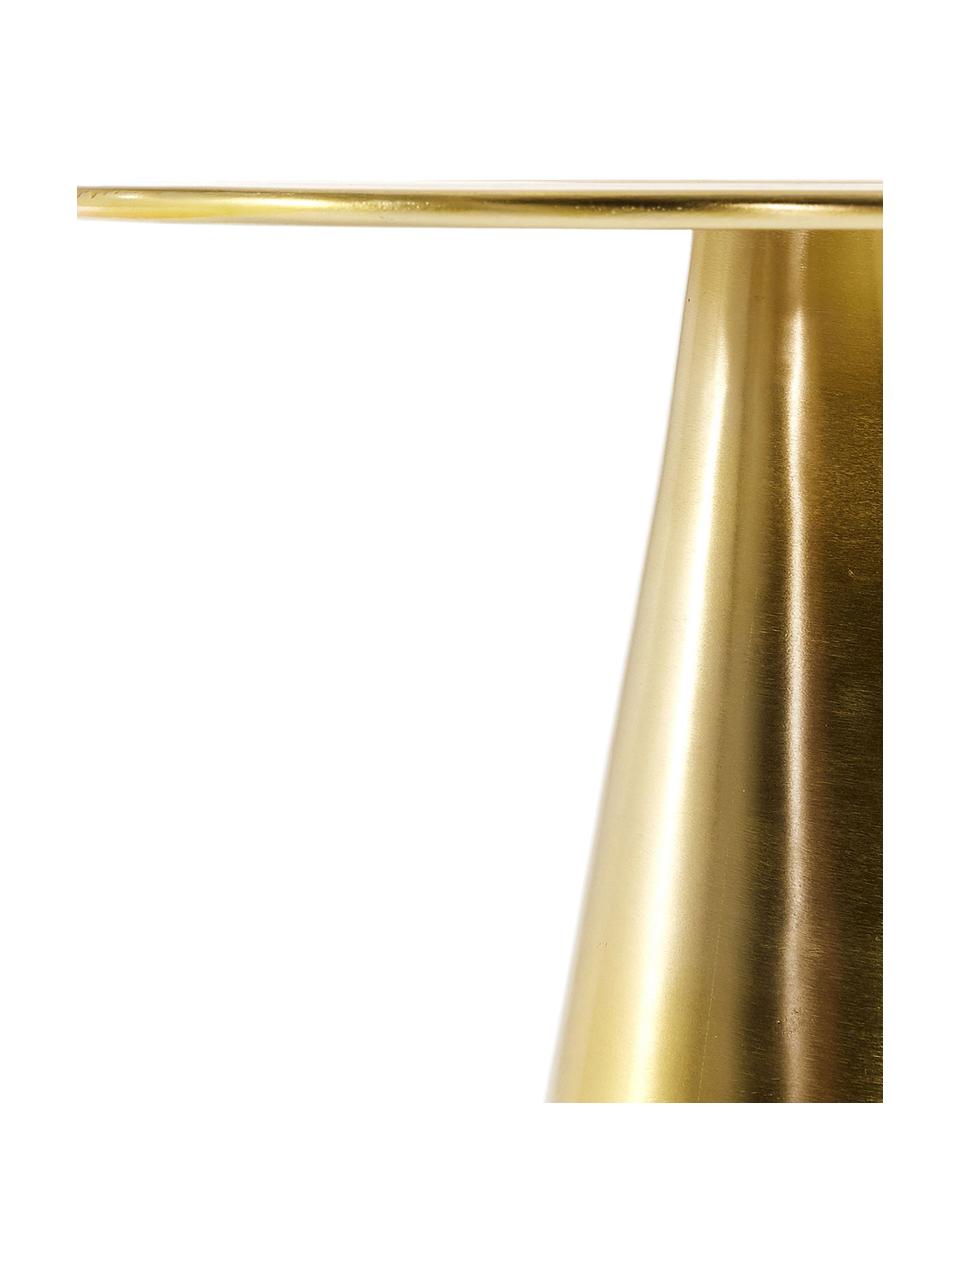 Zlatý odkládací stolek Rhet, Mosazná